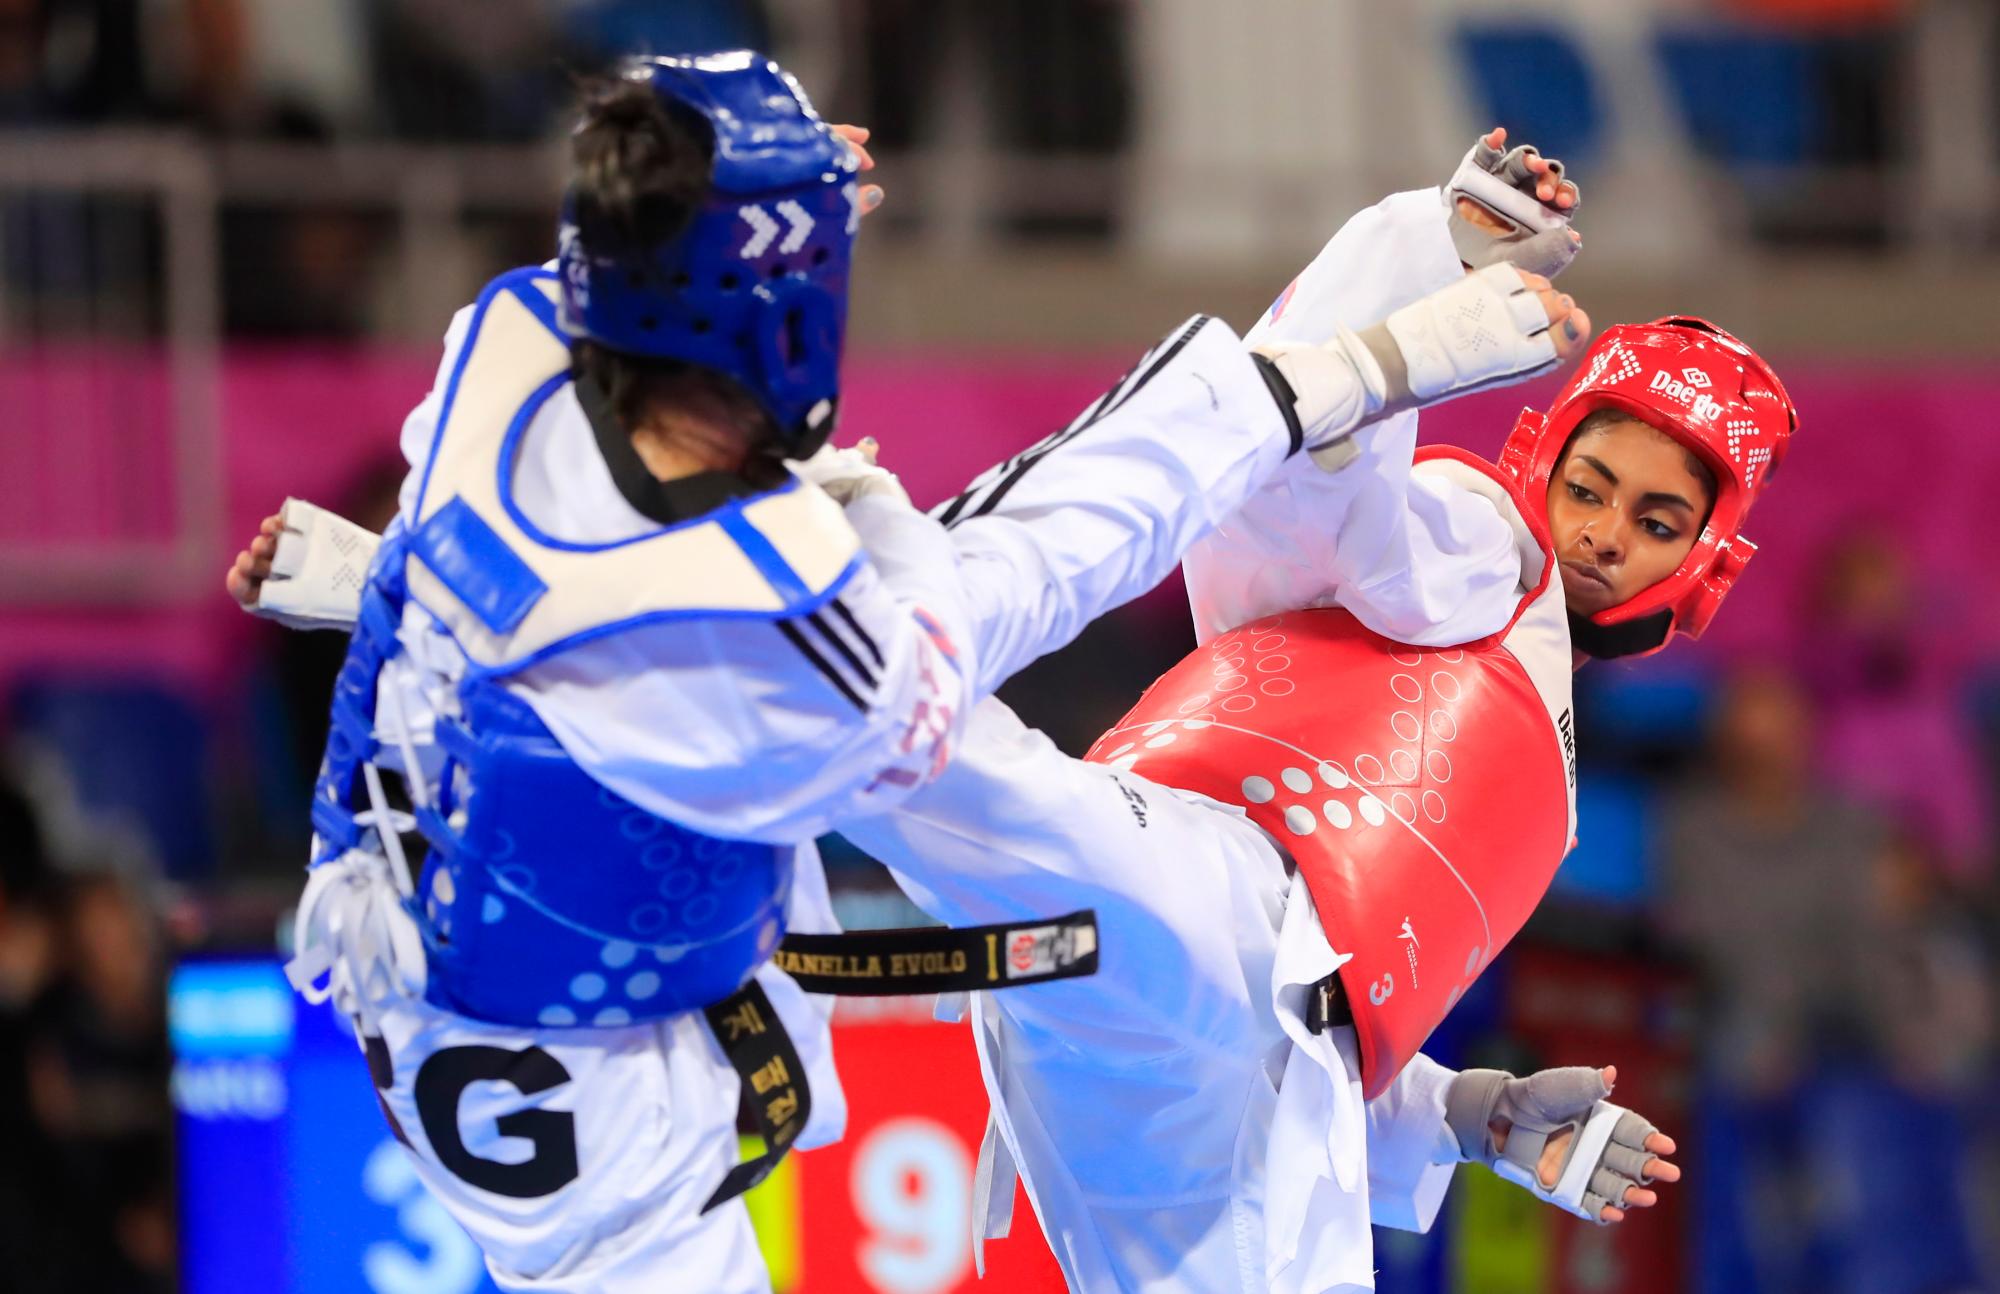 Nishy Lindo de República Dominicana, rojo, batallas contra Gianella Evolo de Argentina durante la competencia femenina de Taekwondo de 8 kg de octavos de final en la Villa Deportiva Regional del Callao en los Juegos Panamericanos de Lima 2019.